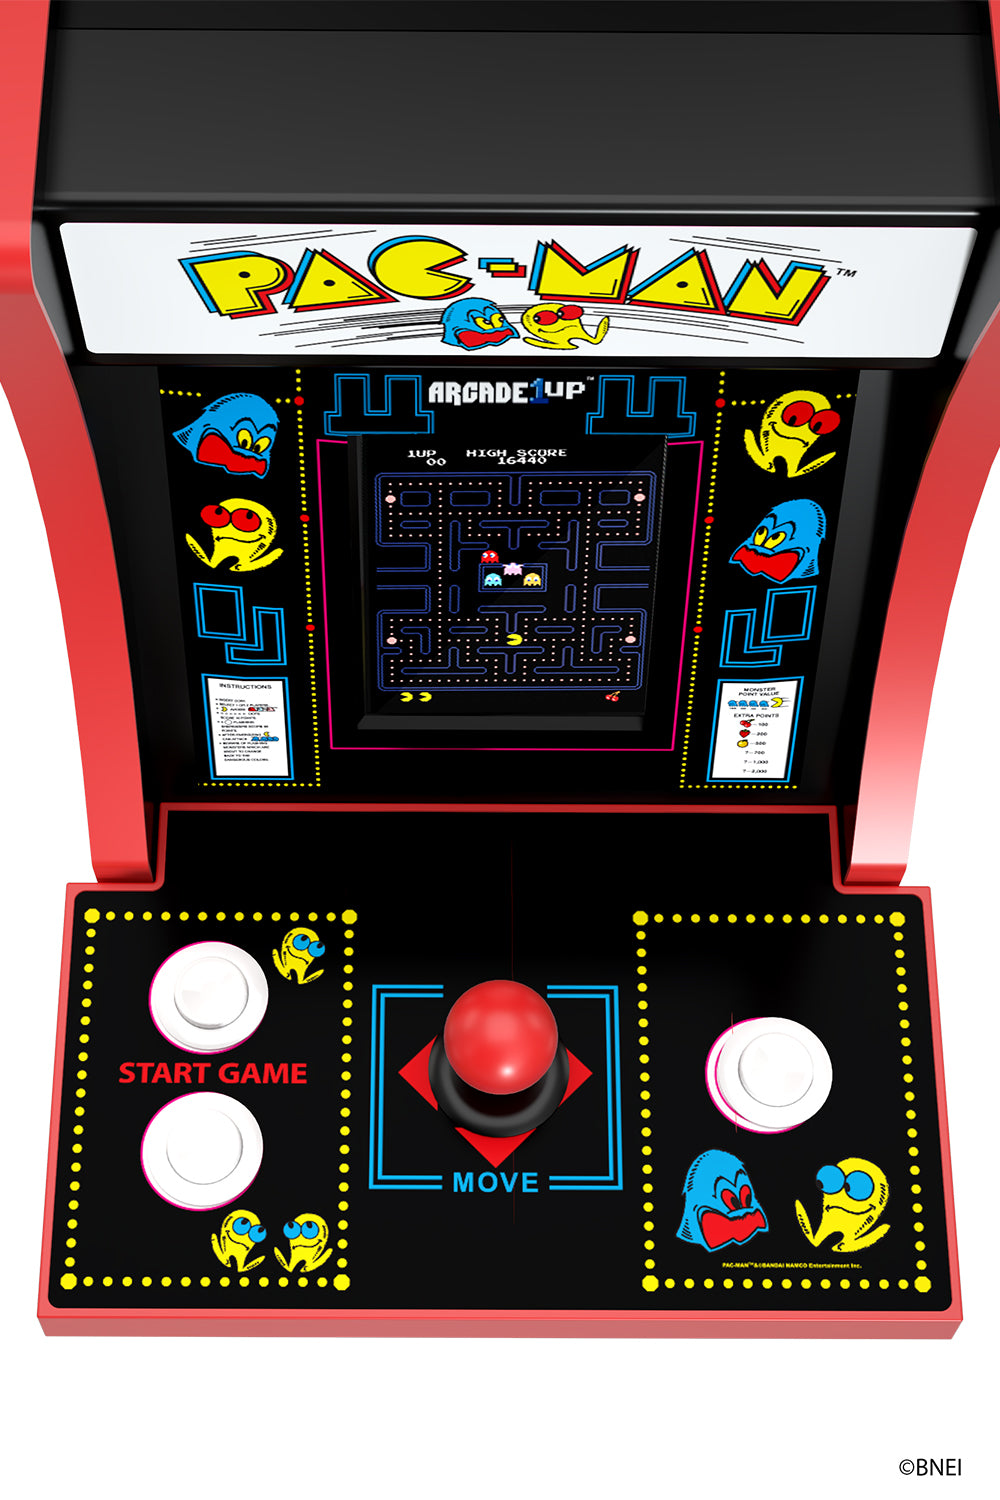 Pac-Man™ Collectorcade™